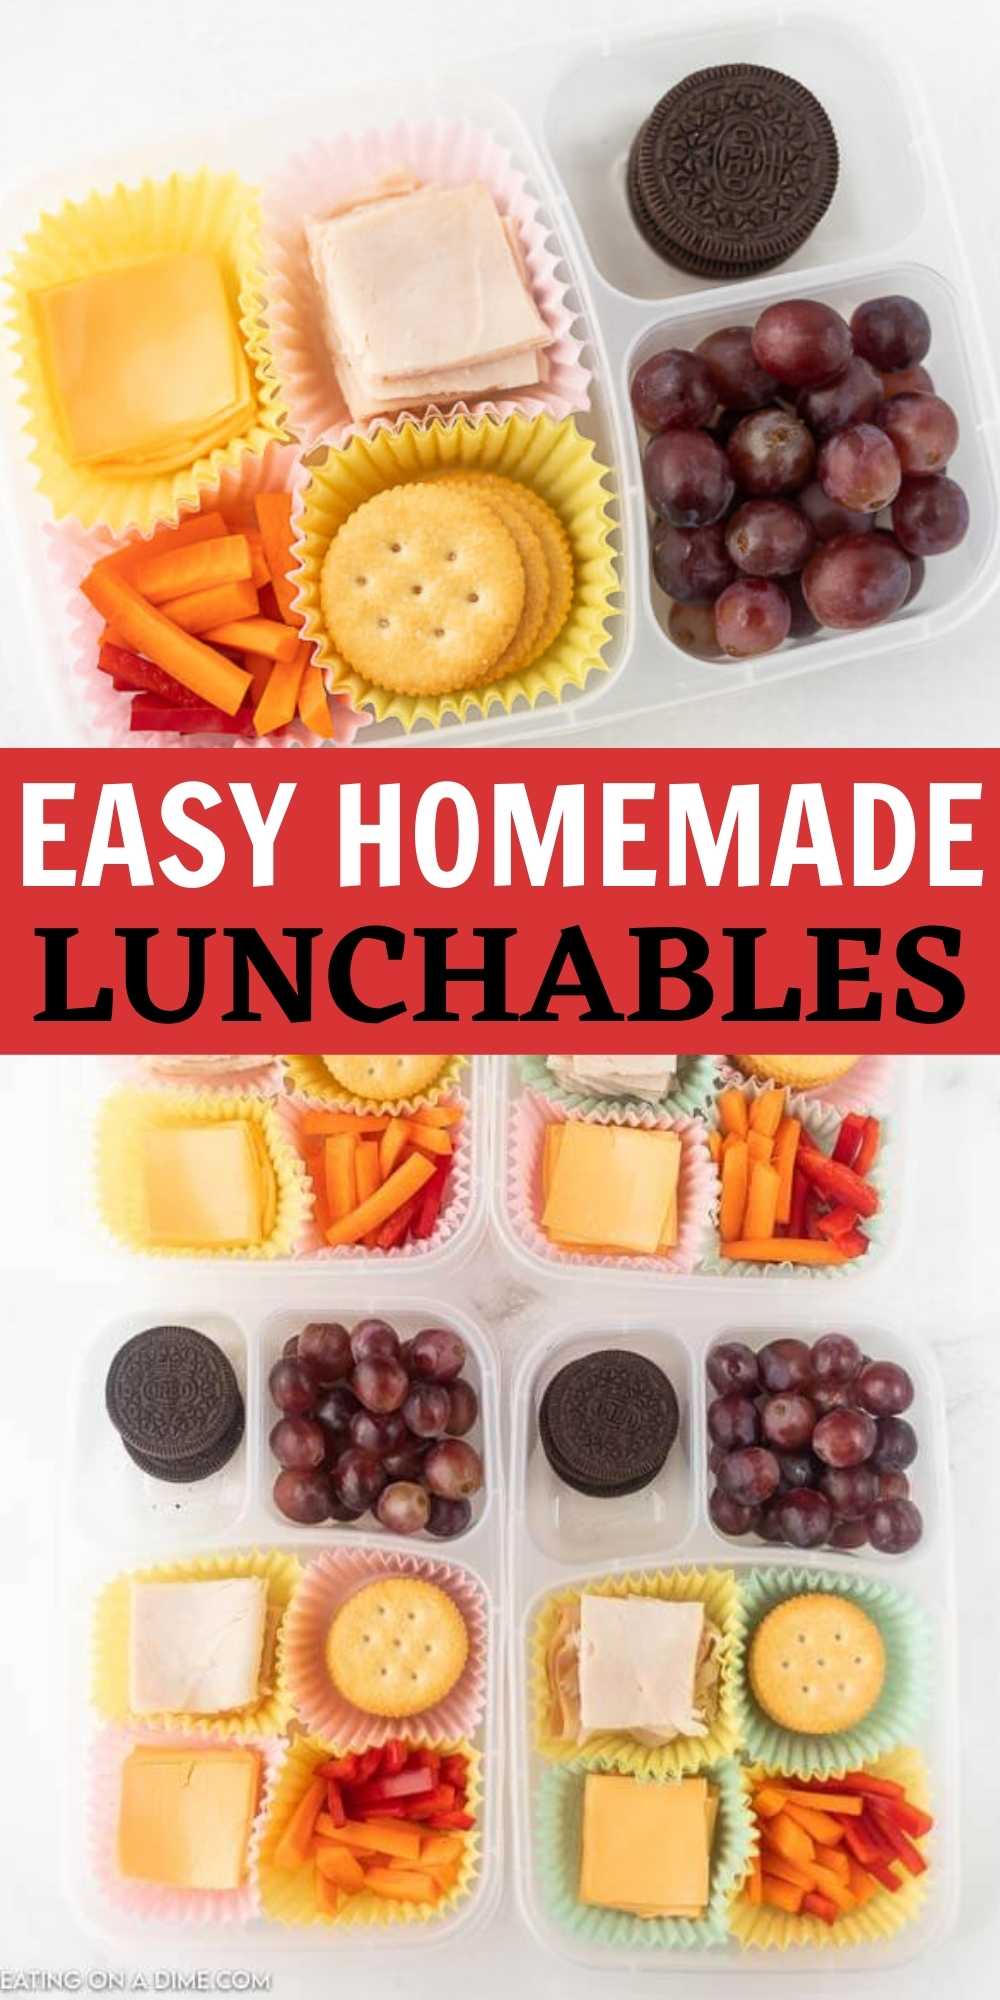 https://www.eatingonadime.com/wp-content/uploads/2021/06/Homemade-Lunchables-Pin-1.jpg